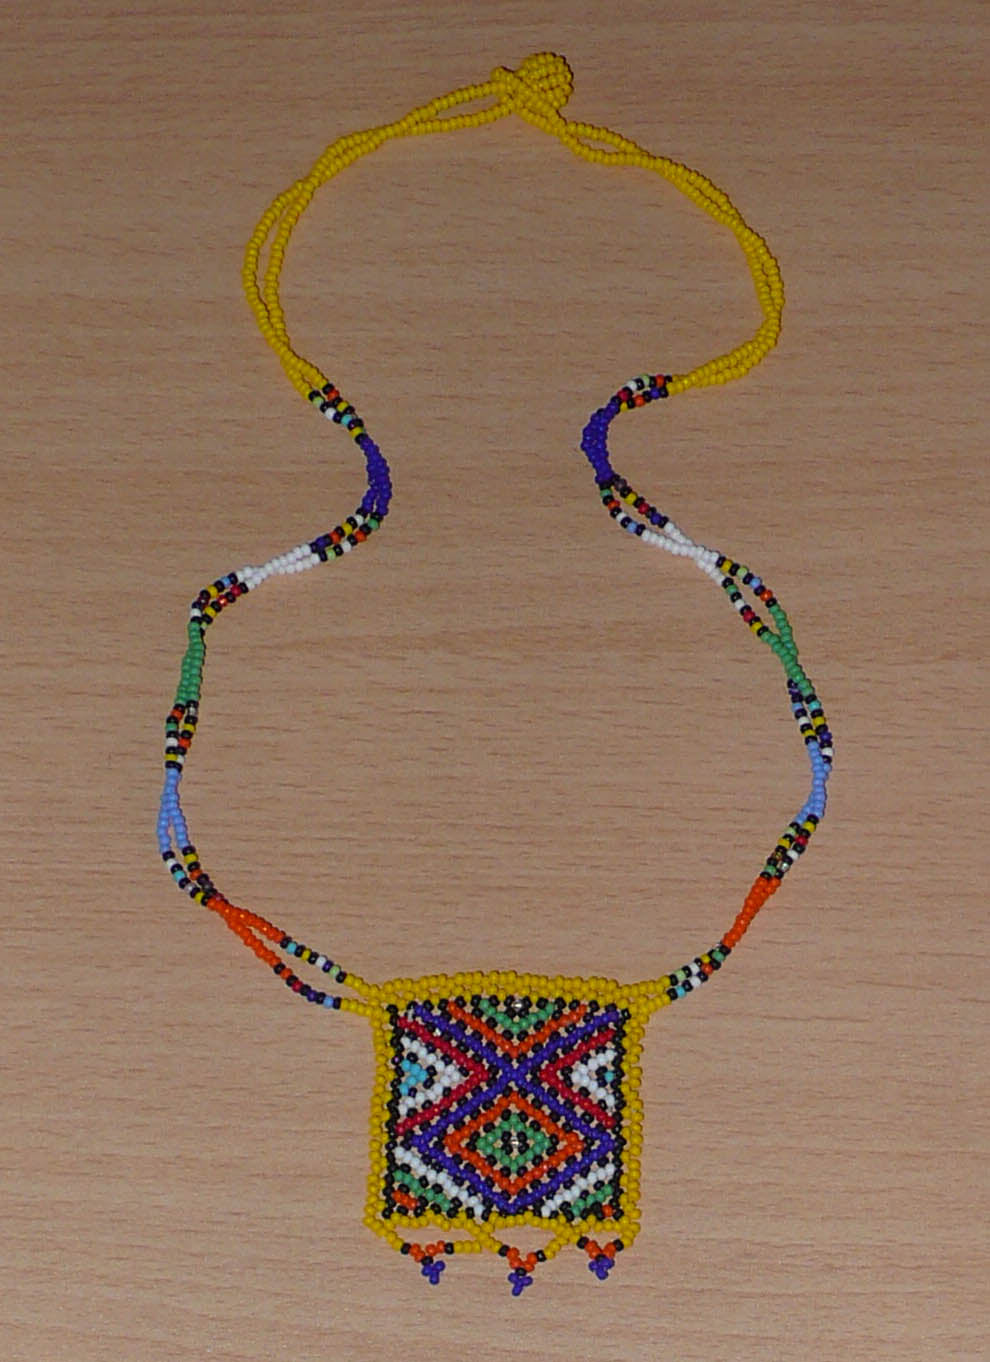 Collier africain orné d'un pendentif carré agrémenté de motifs traditionnels sud-africains. Il se compose de perles de rocaille jaunes et multicolores et s'attache avec un fermoir à boule.  Ce collier mesure 27,5 cm de long (de la nuque au pendentif), la longueur de chaîne autour du cou est de 50 cm ; le pendentif carré orné d'une petite frise perlée mesure 5,5 cm de long et 4,5 cm de large.